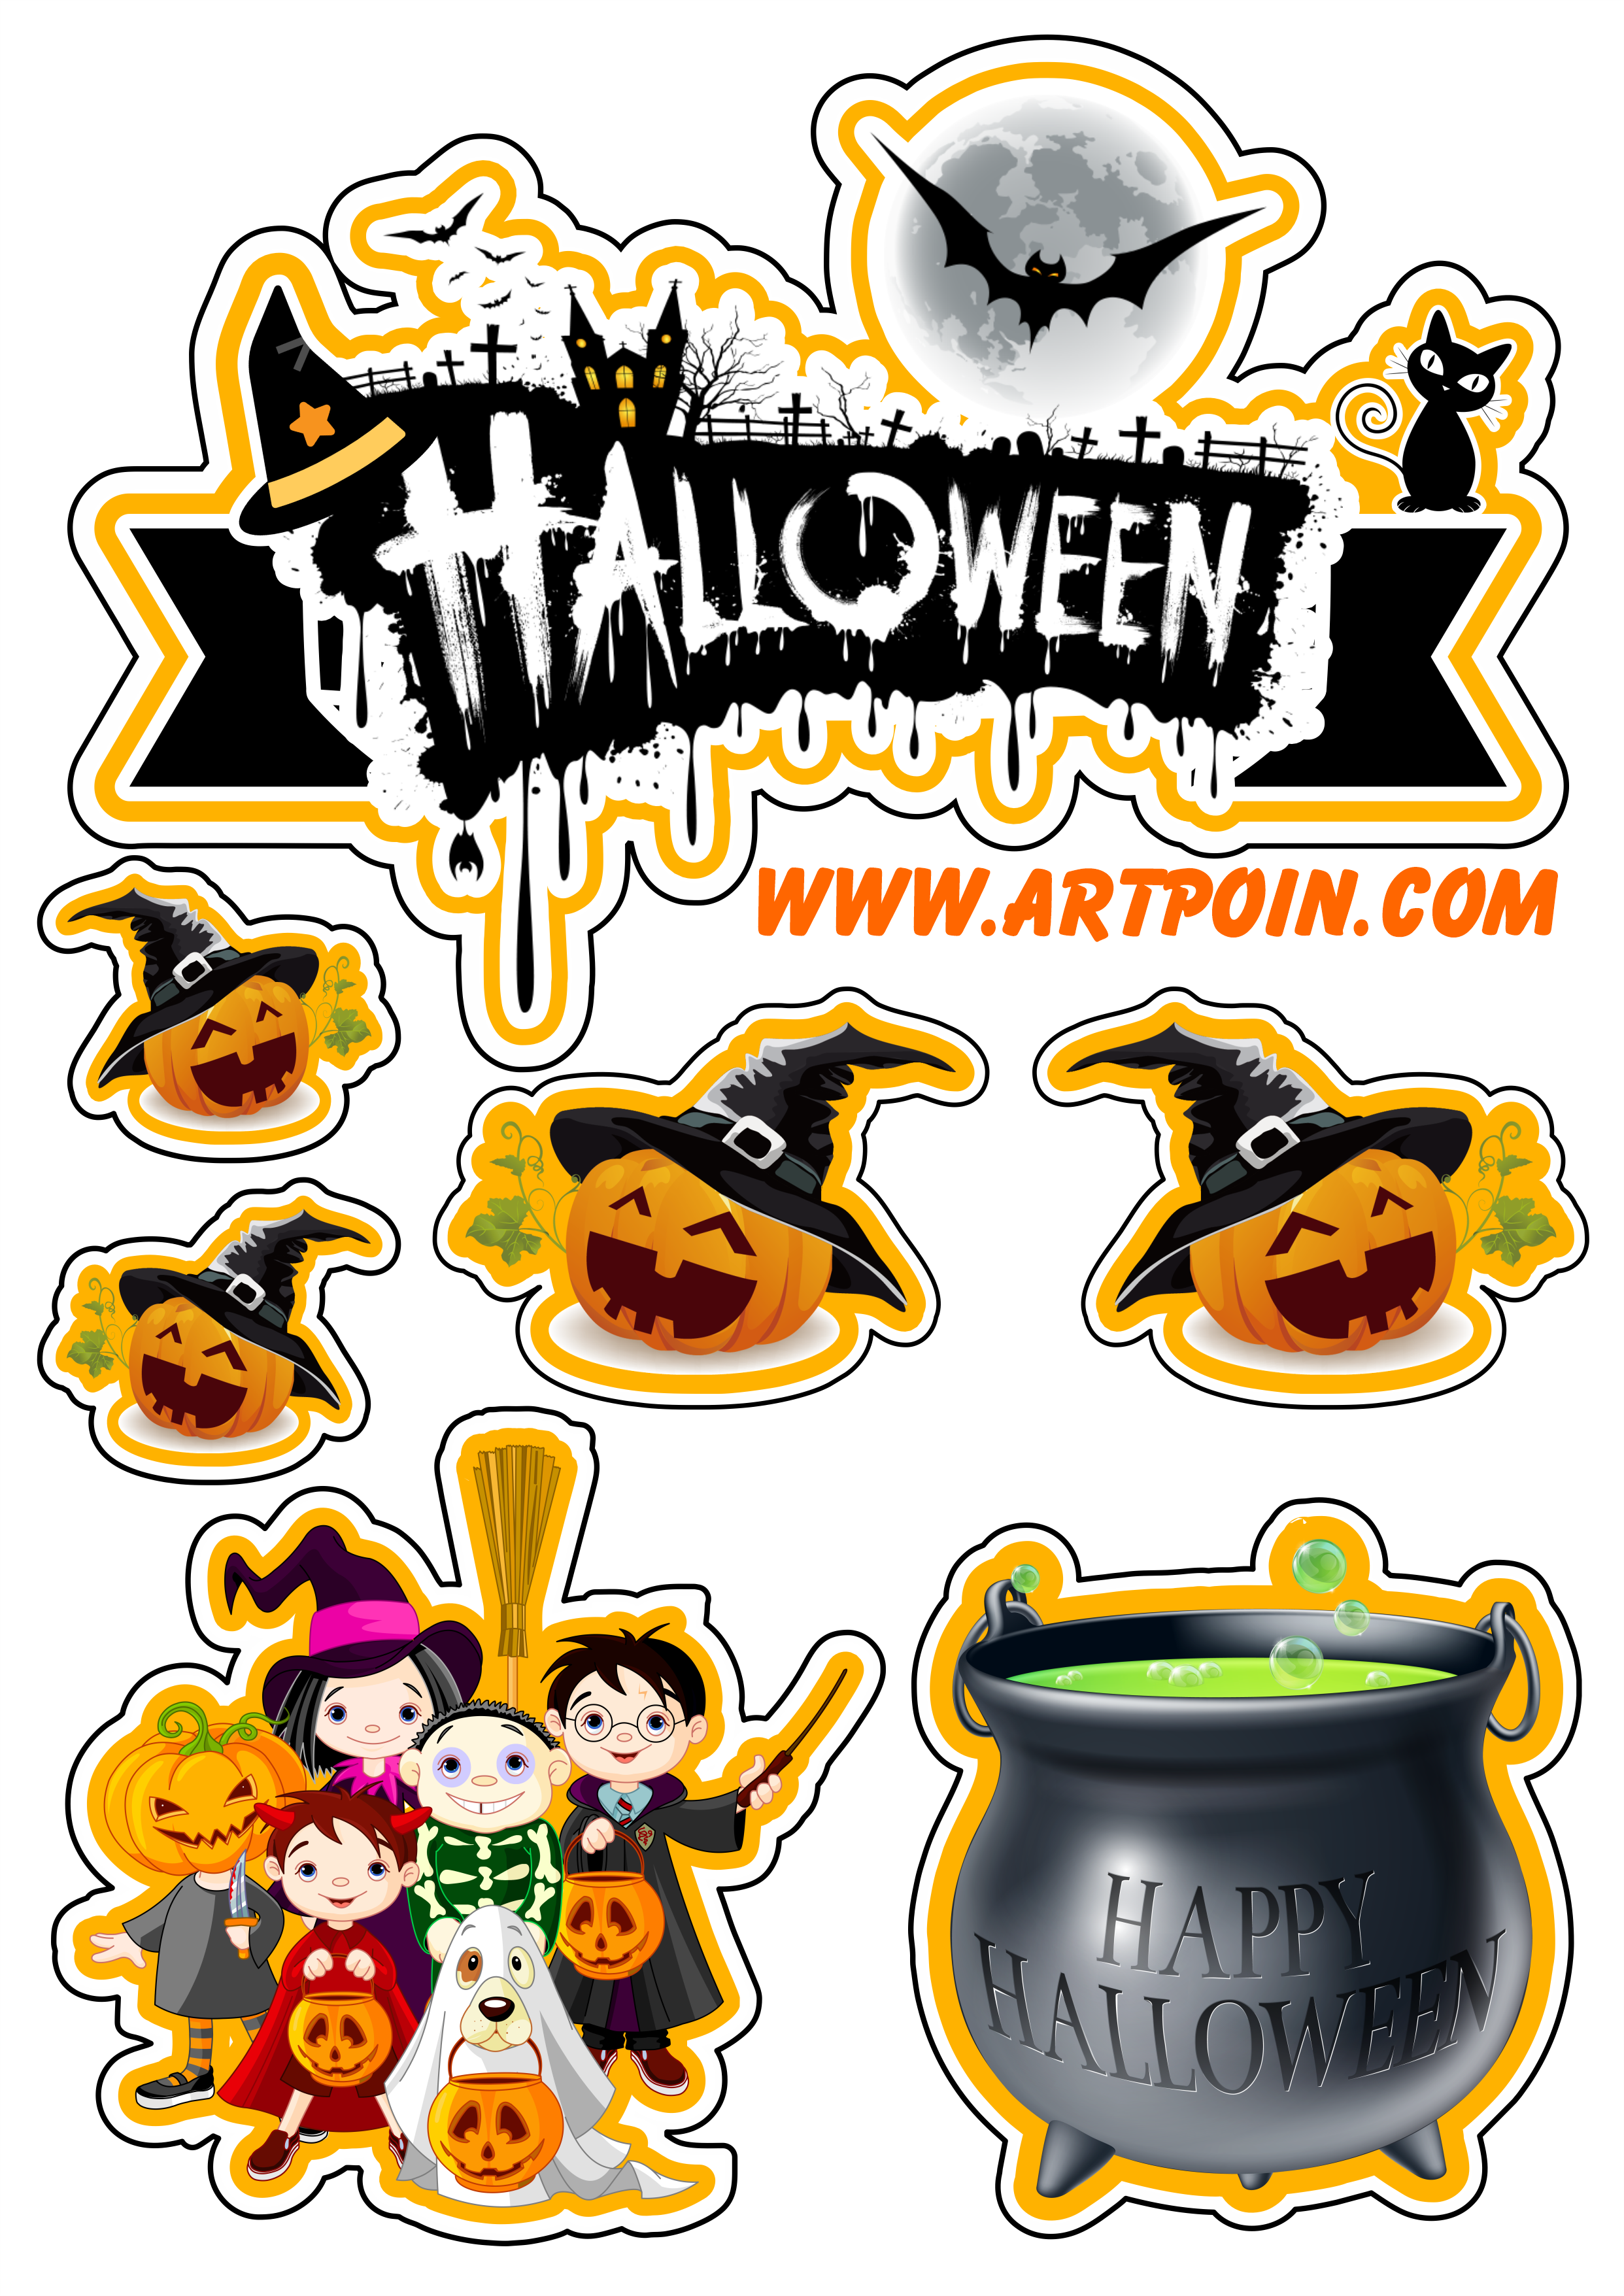 Topo de bolo halloween grátis para imprimir e decorar sua festa pack de imagens png